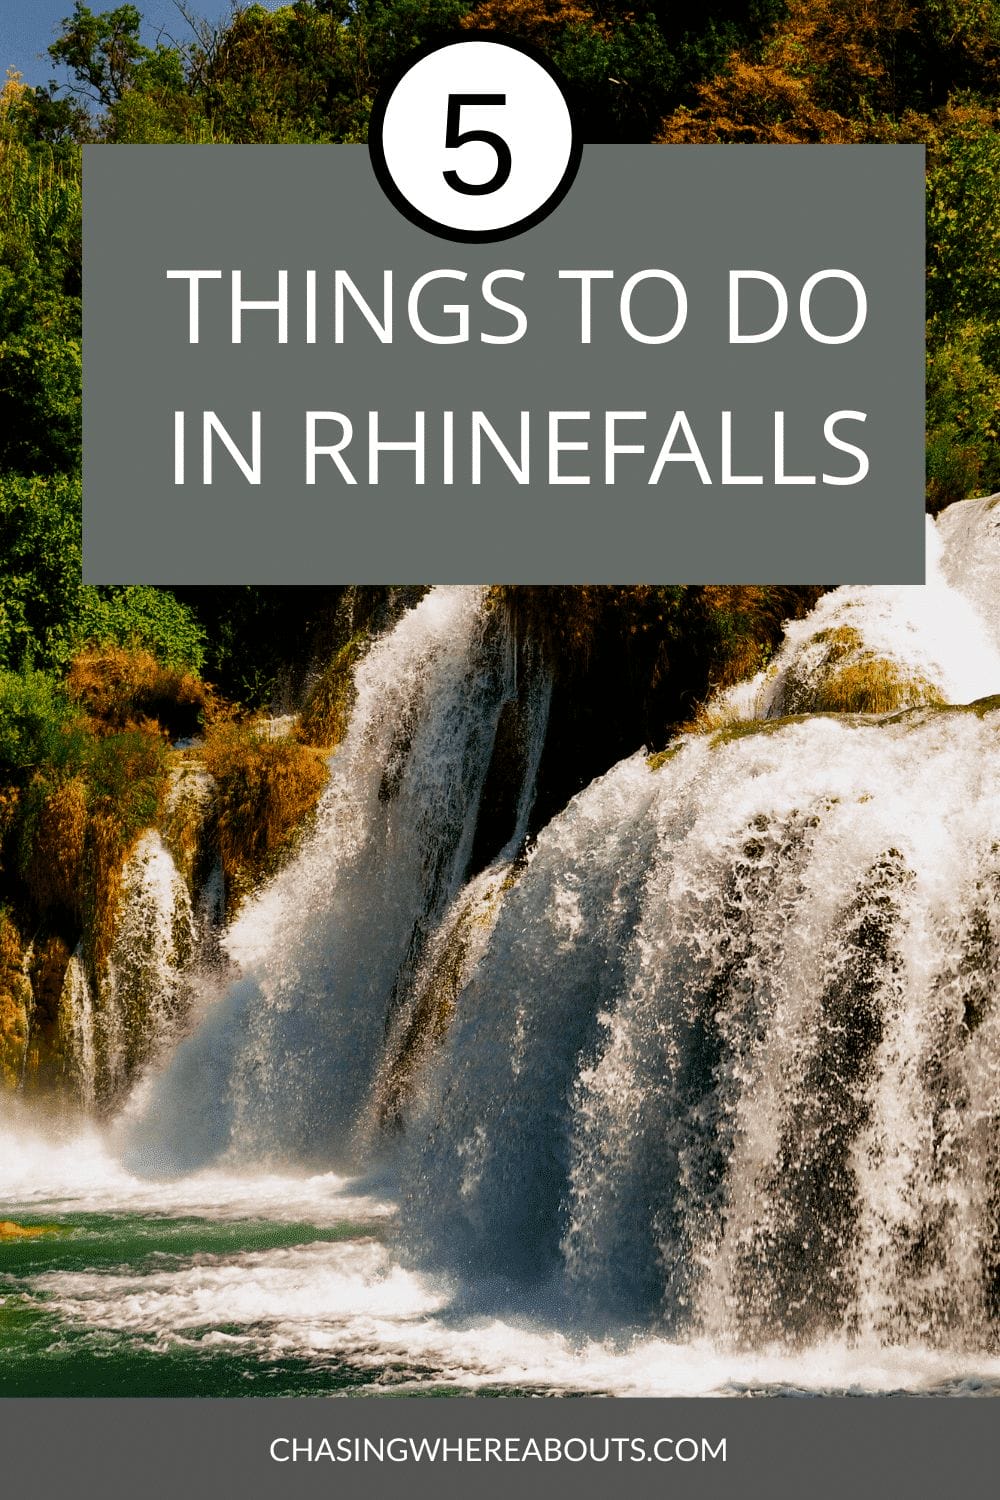 Day trip to Rhine falls | Rhinefalls